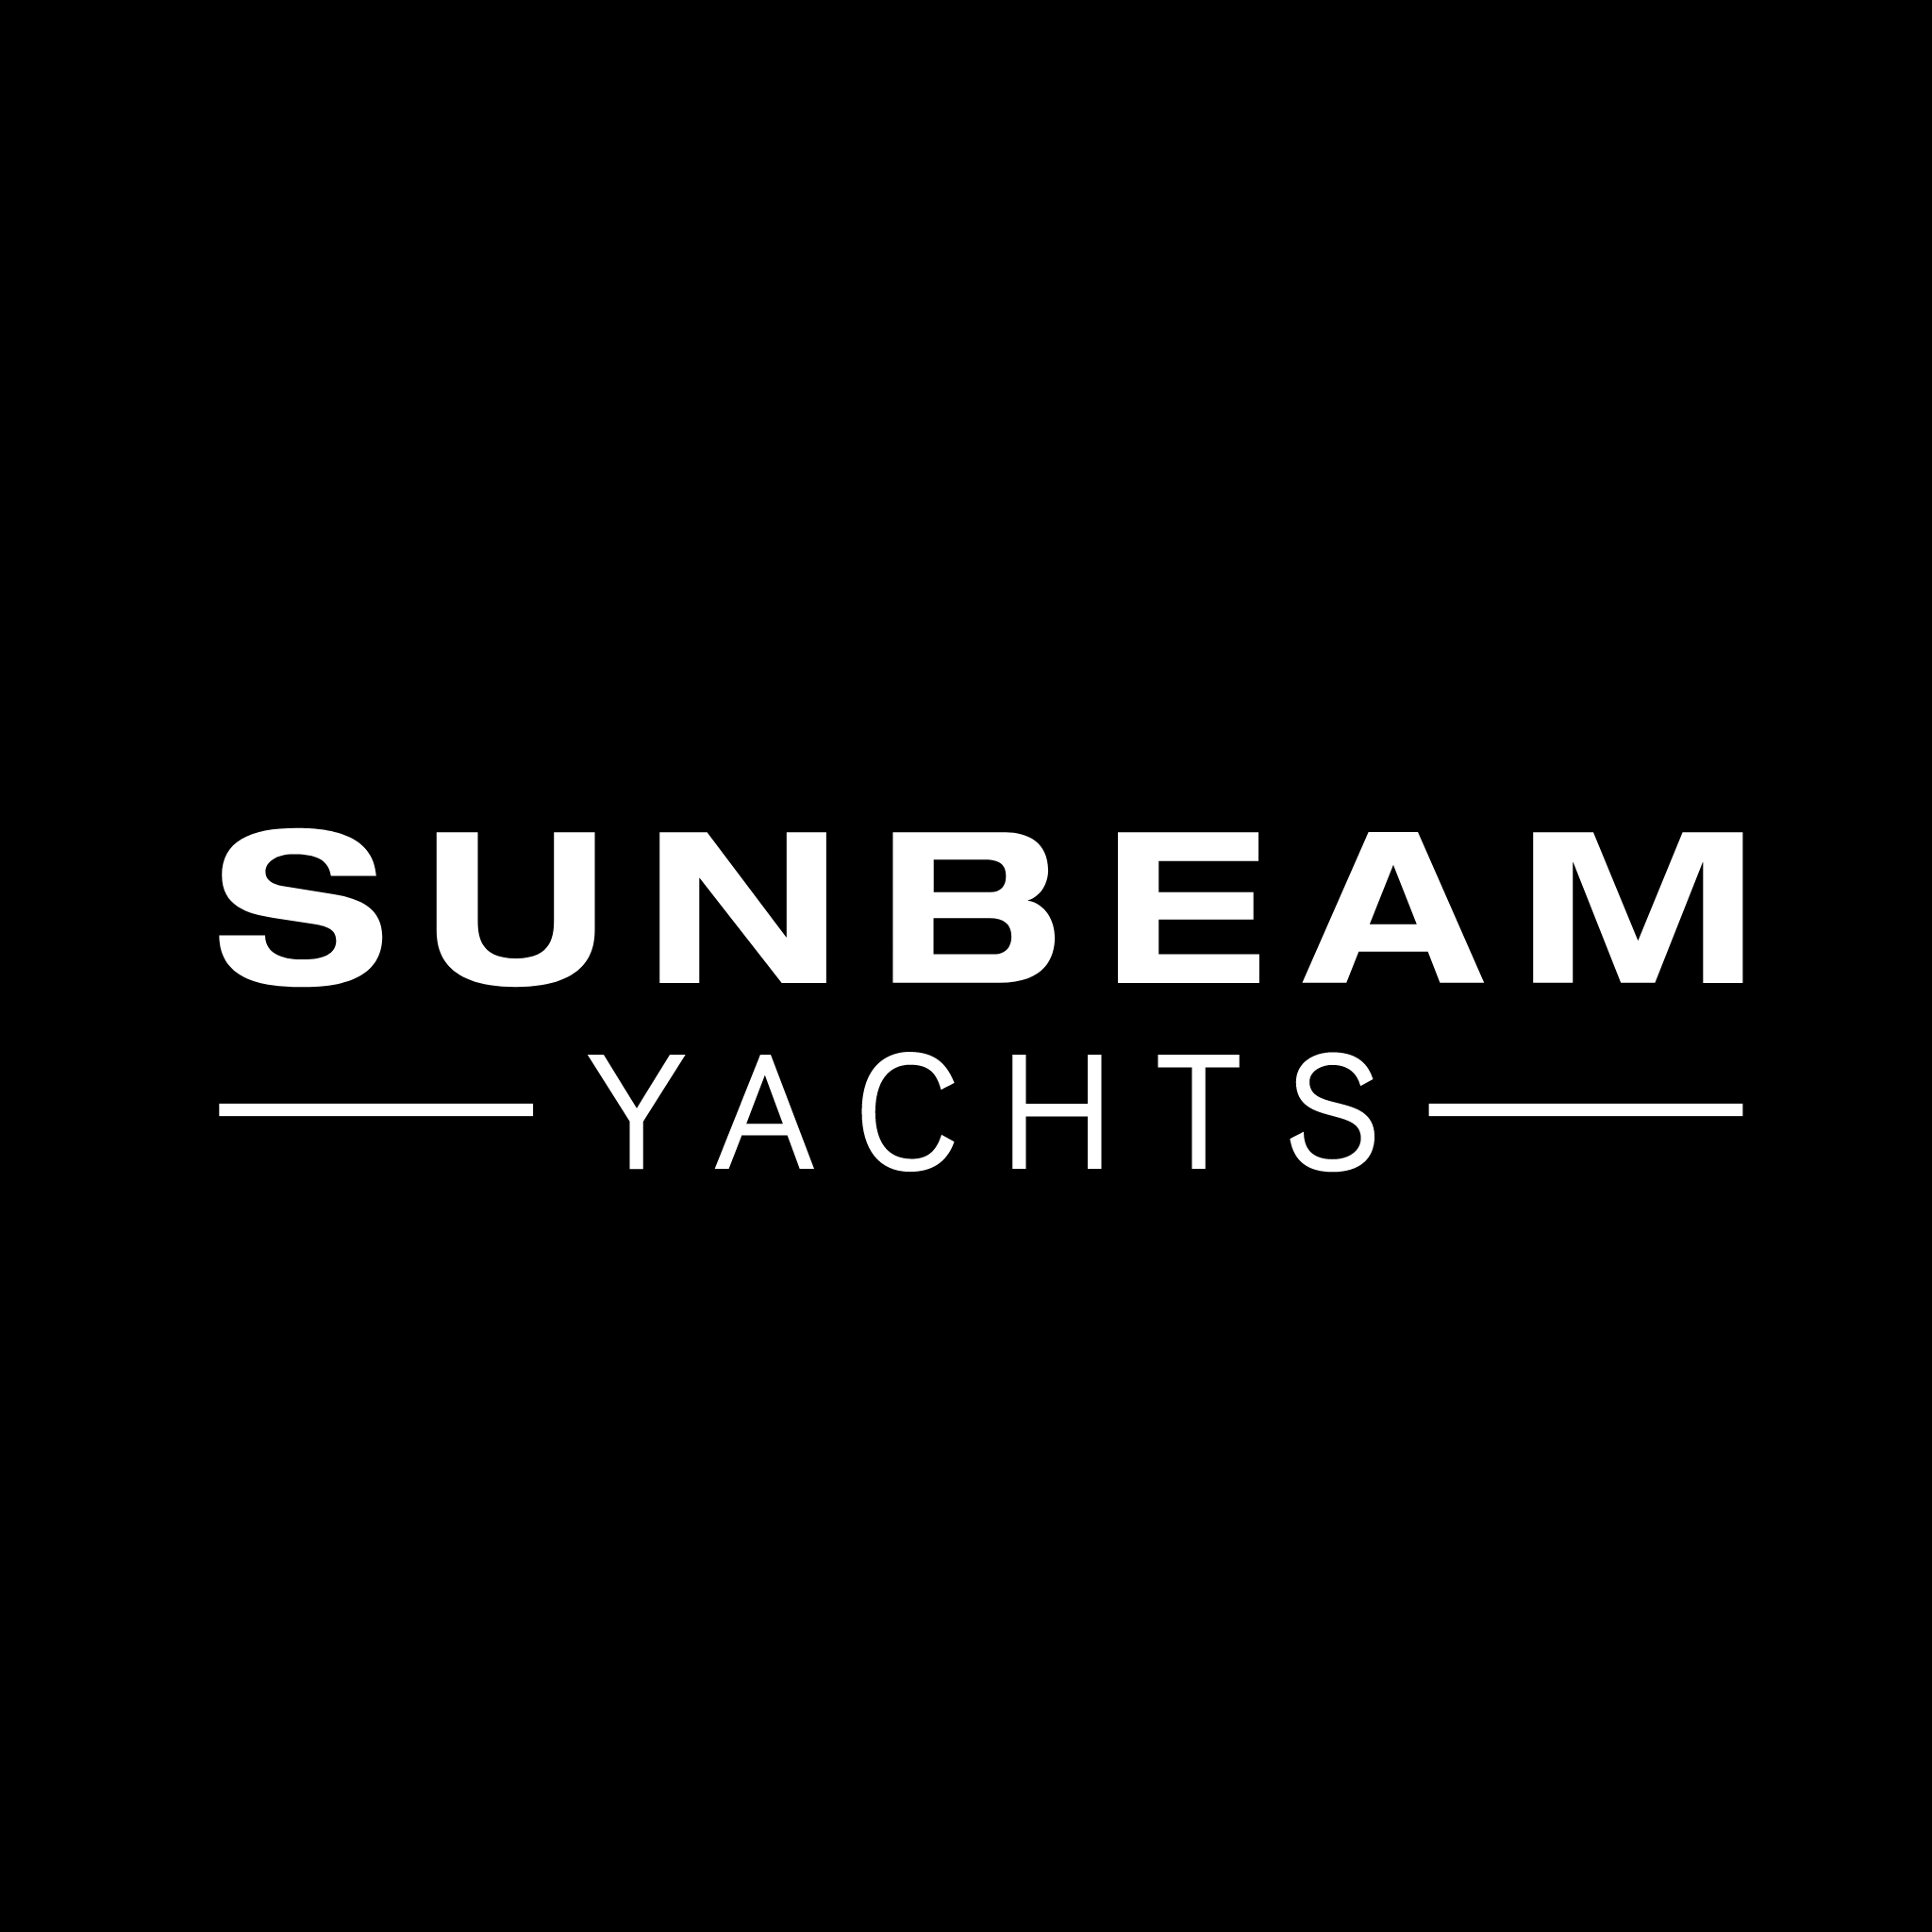 SUNBEAM Yachts zeigt in allen Bereichen bestes Service und TOP Qualität.